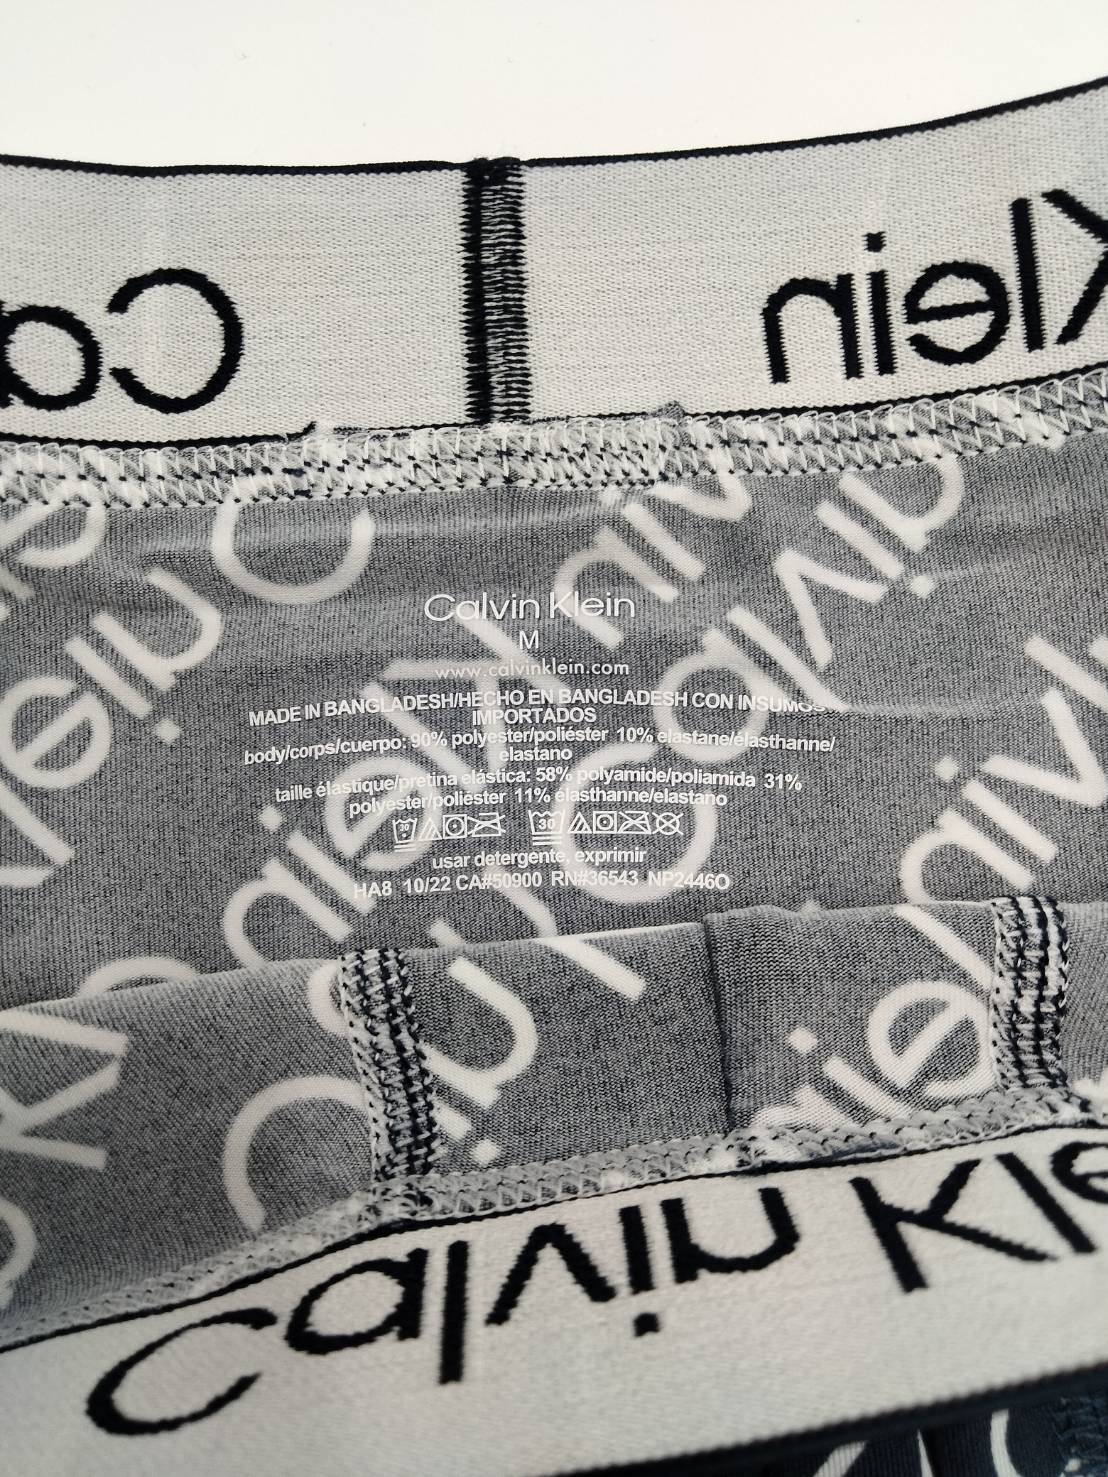 Calvin Klein(カルバンクライン) ローライズ ボクサーパンツ 英字柄 2枚セット NP2446O